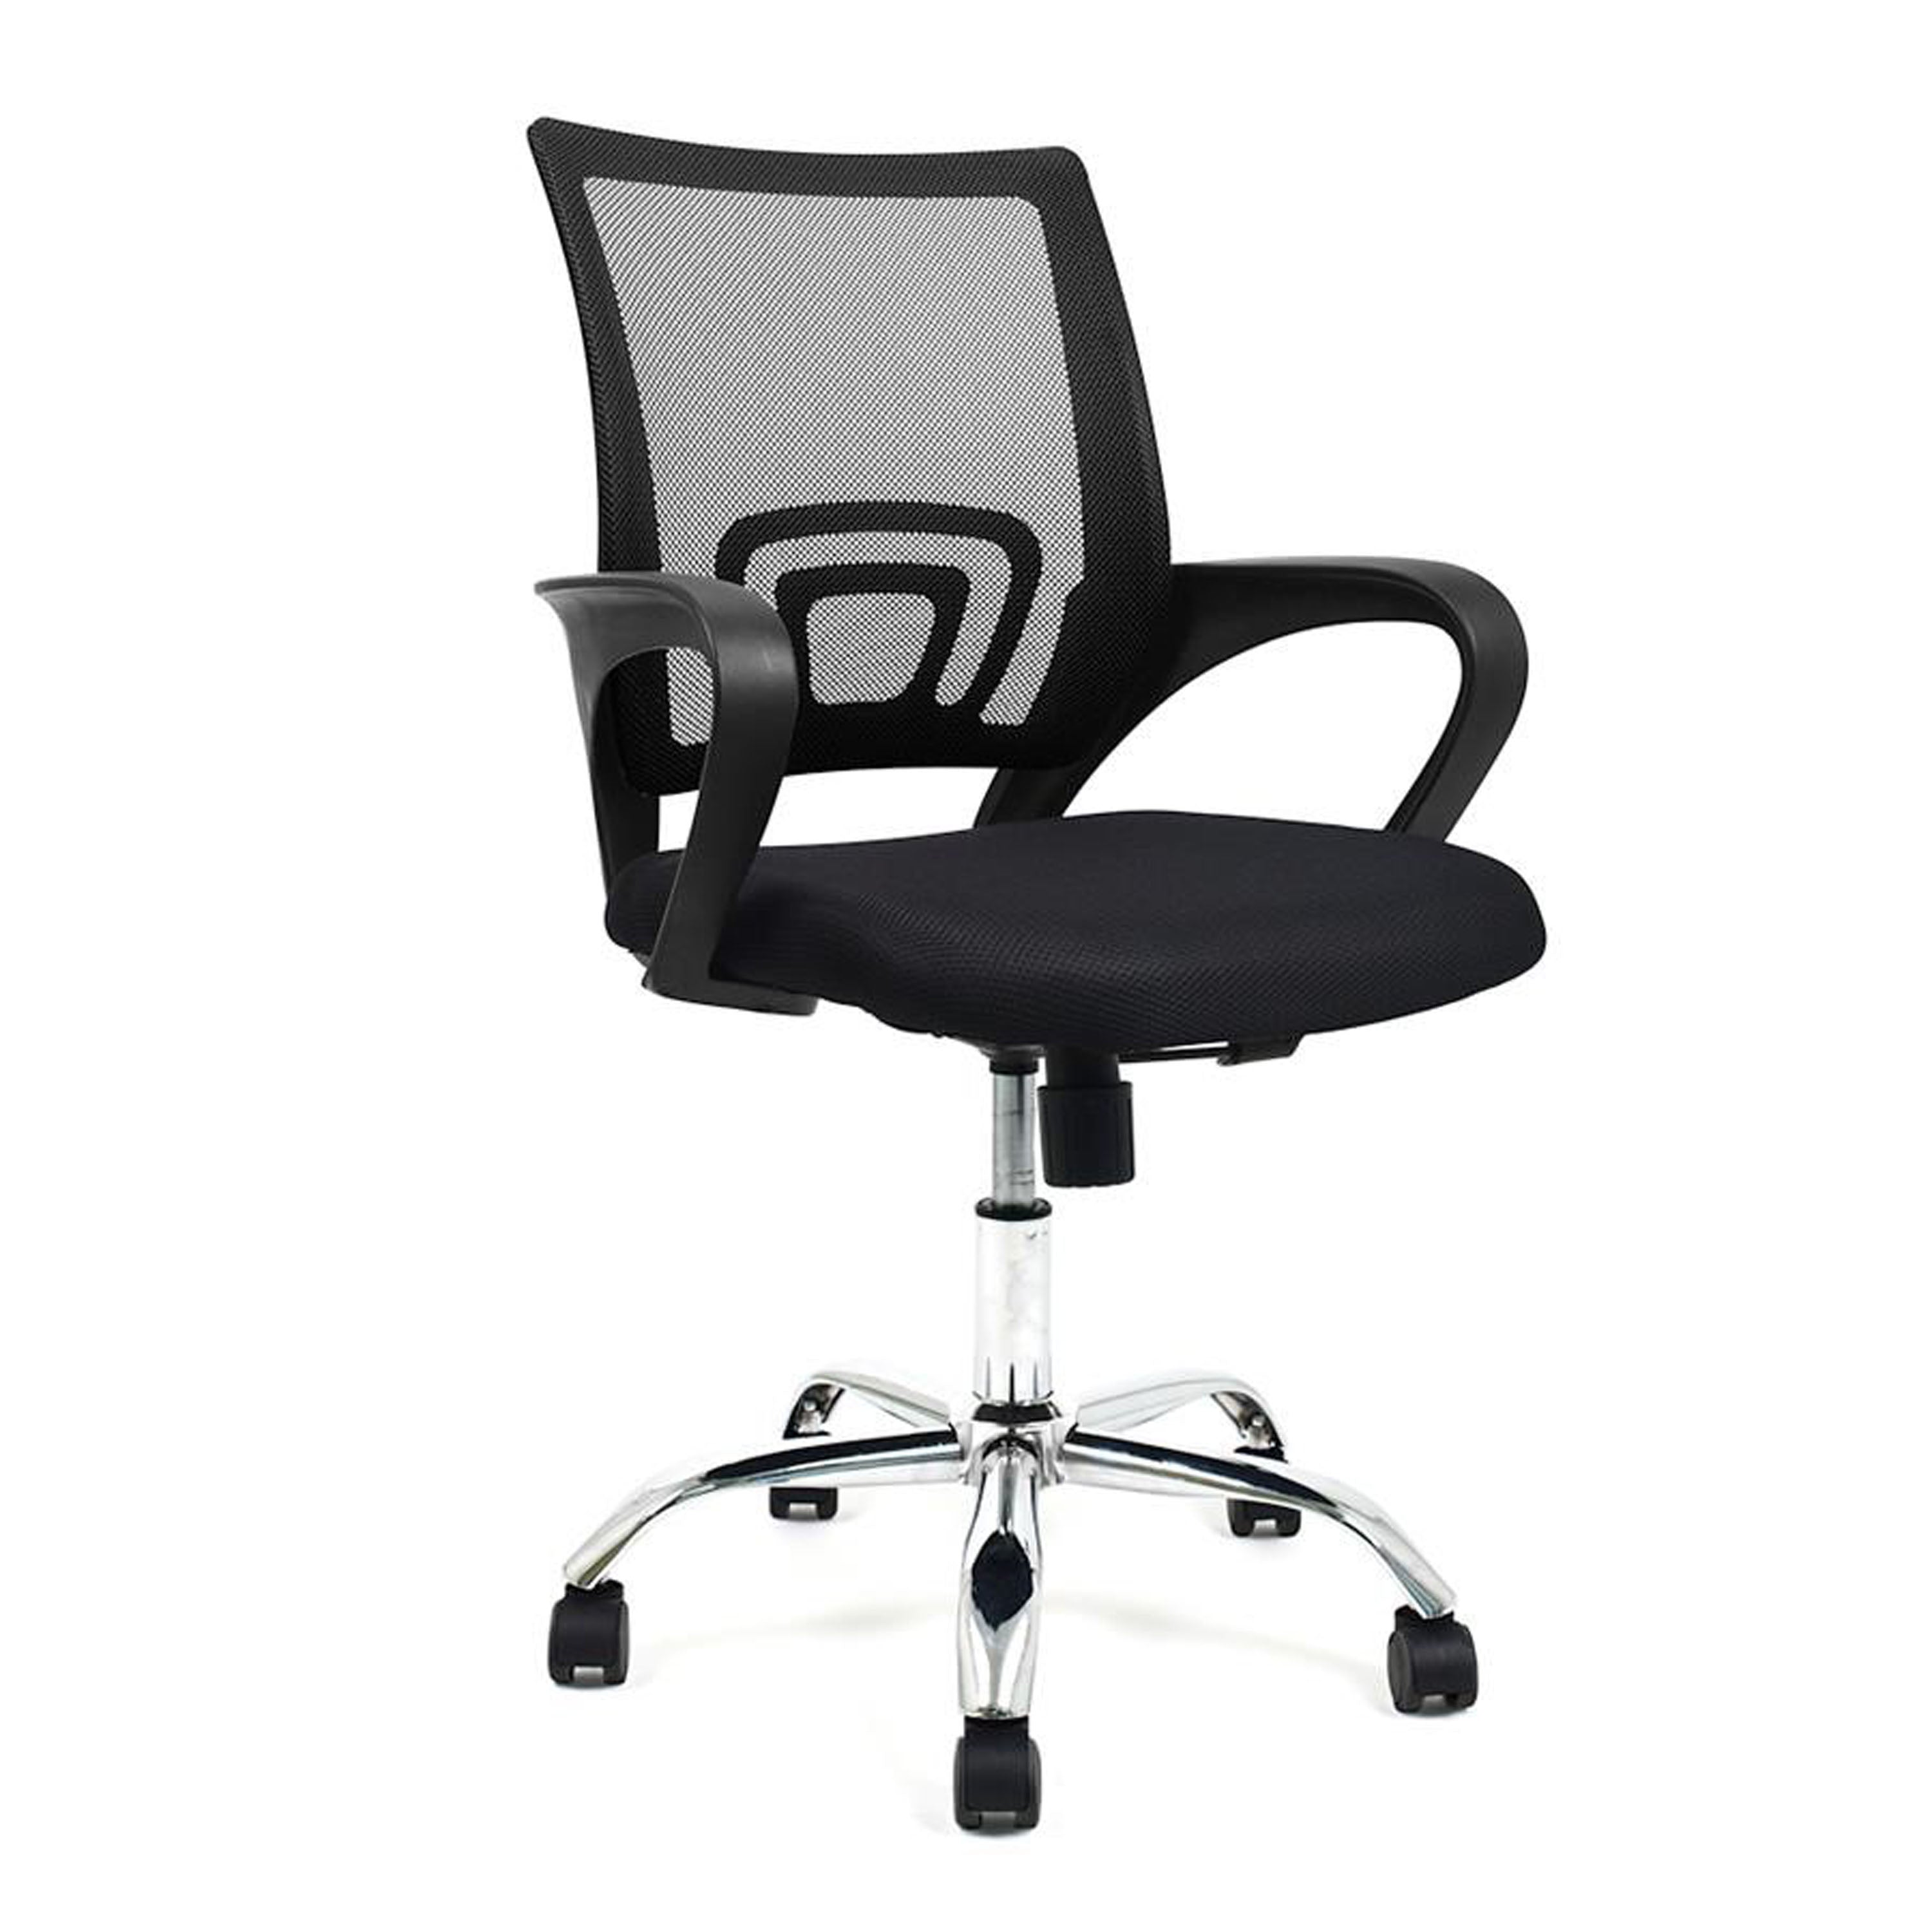 iQ Home Office Chair